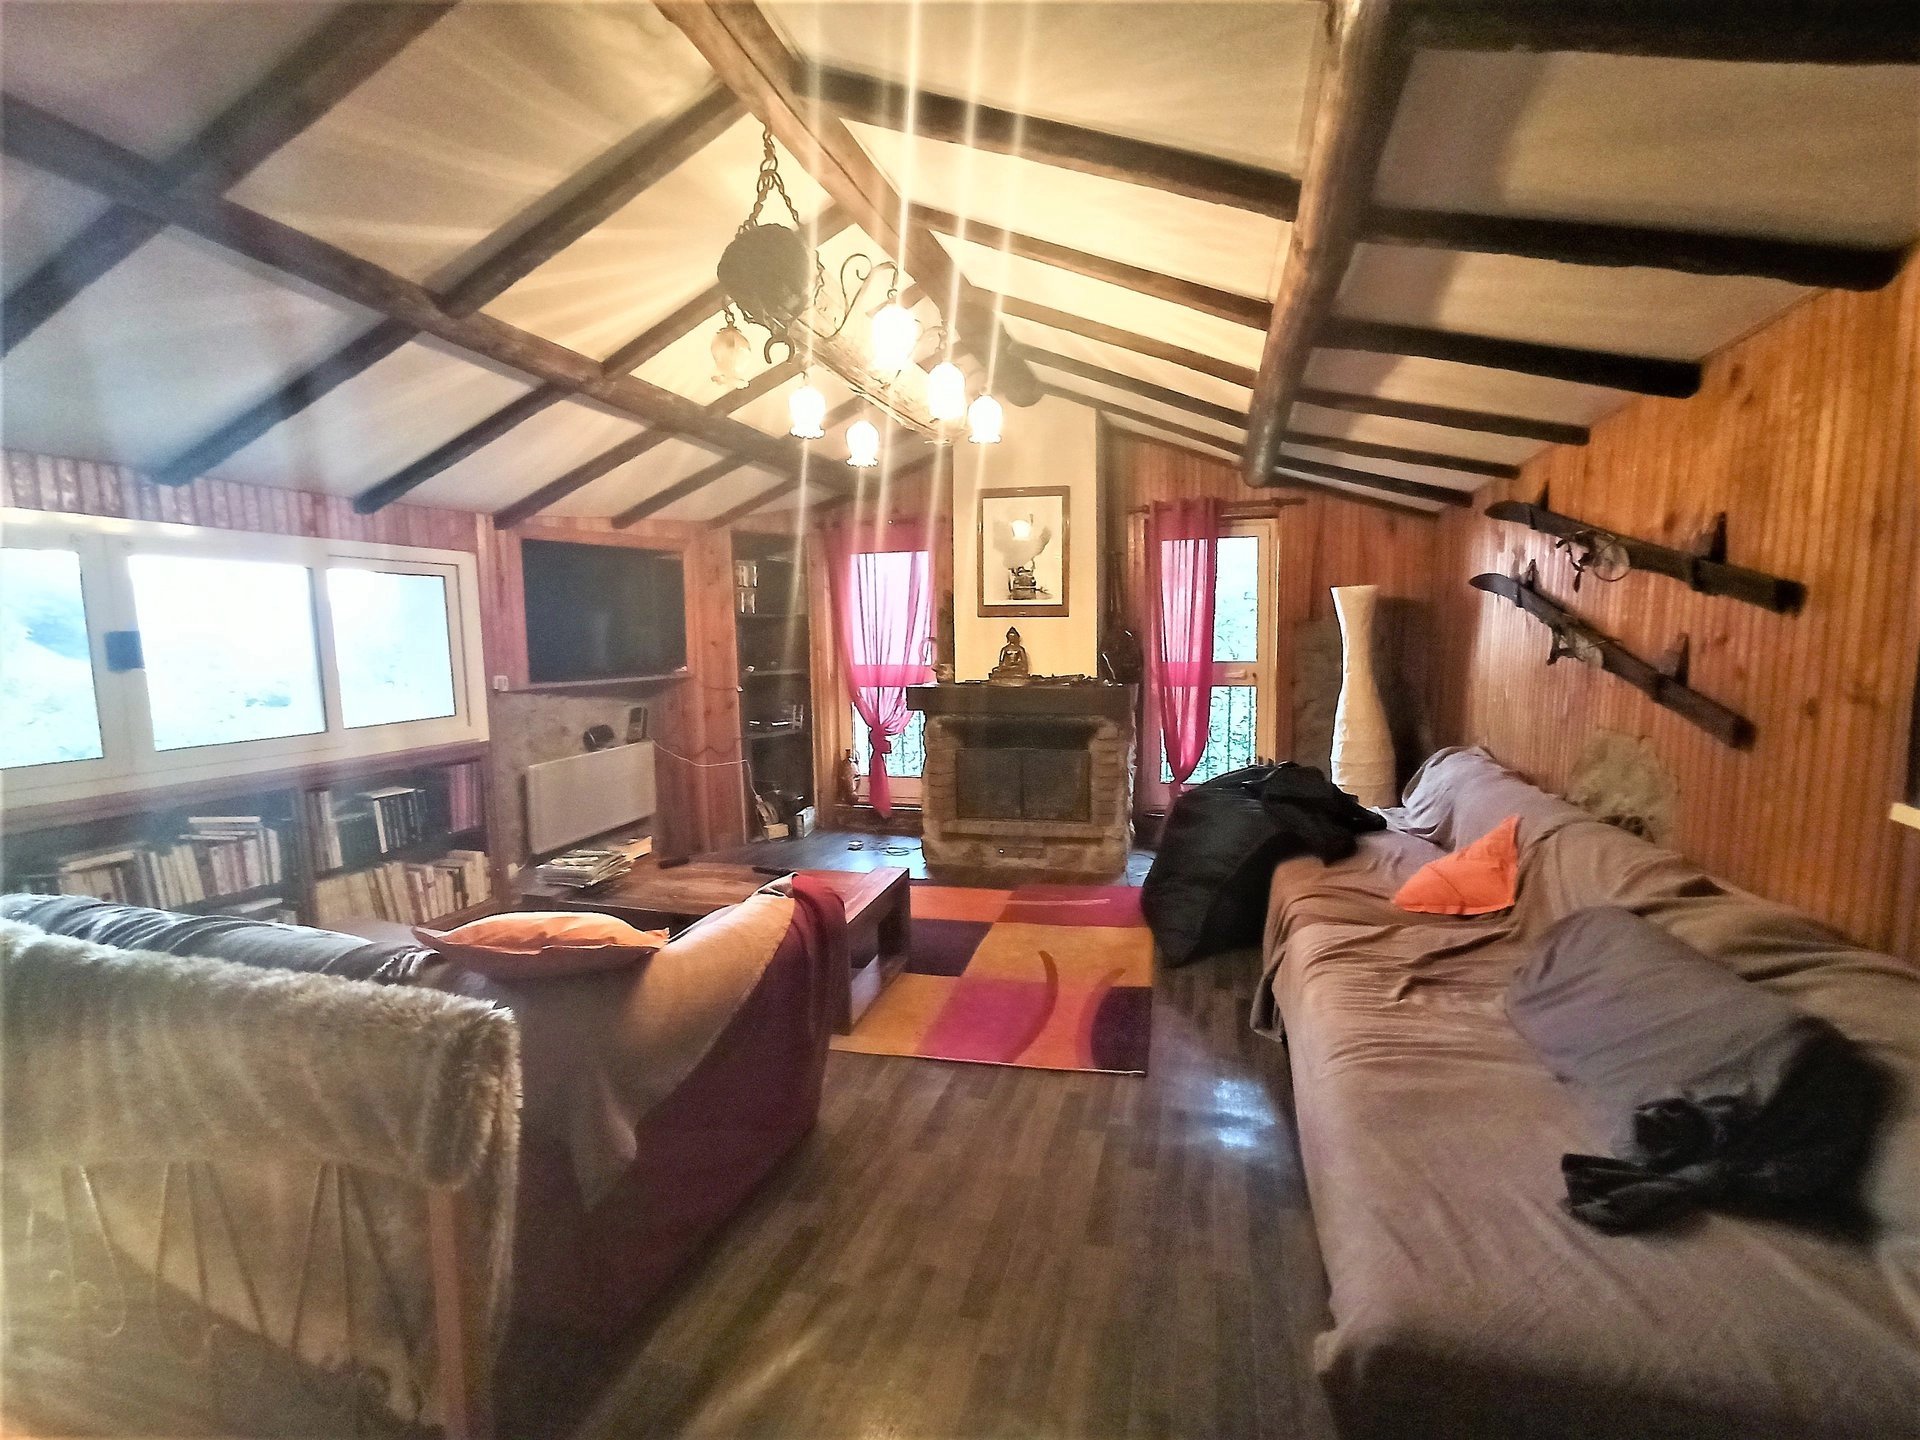 Living-room Wooden floor Fireplace